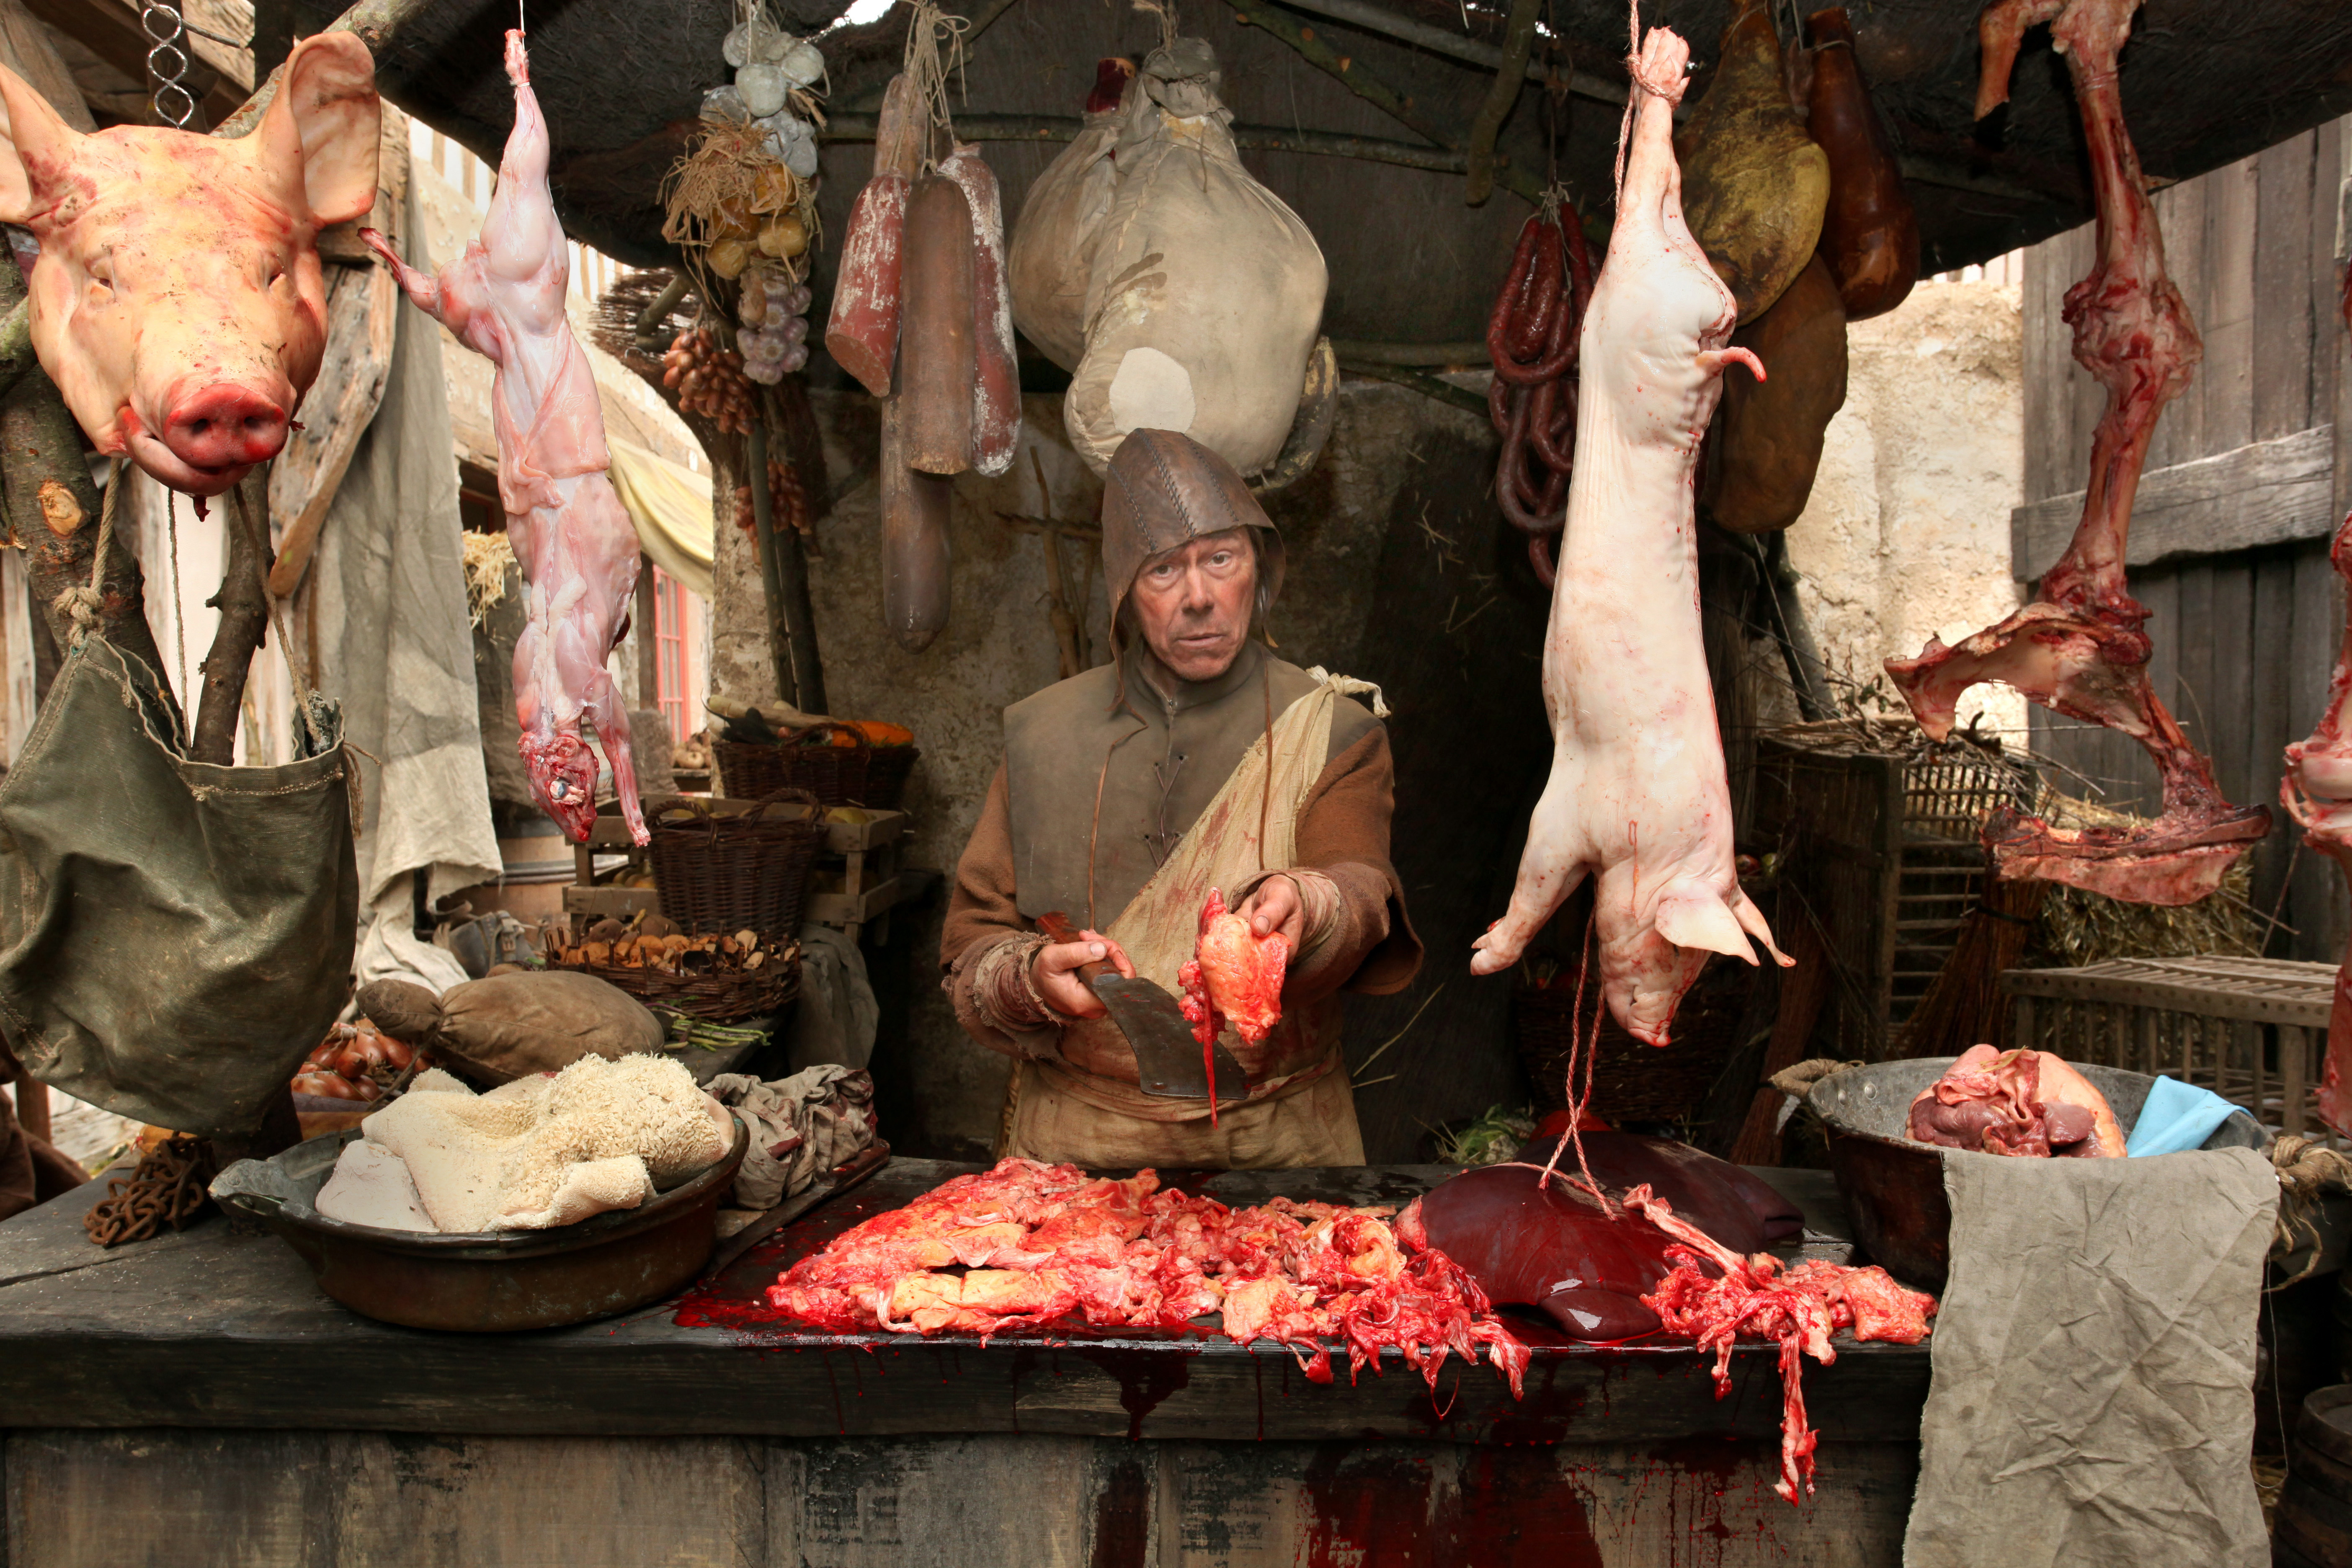 Az egészségre és a környezetre is káros, mégis egyre több húst fogyaszt az emberiség